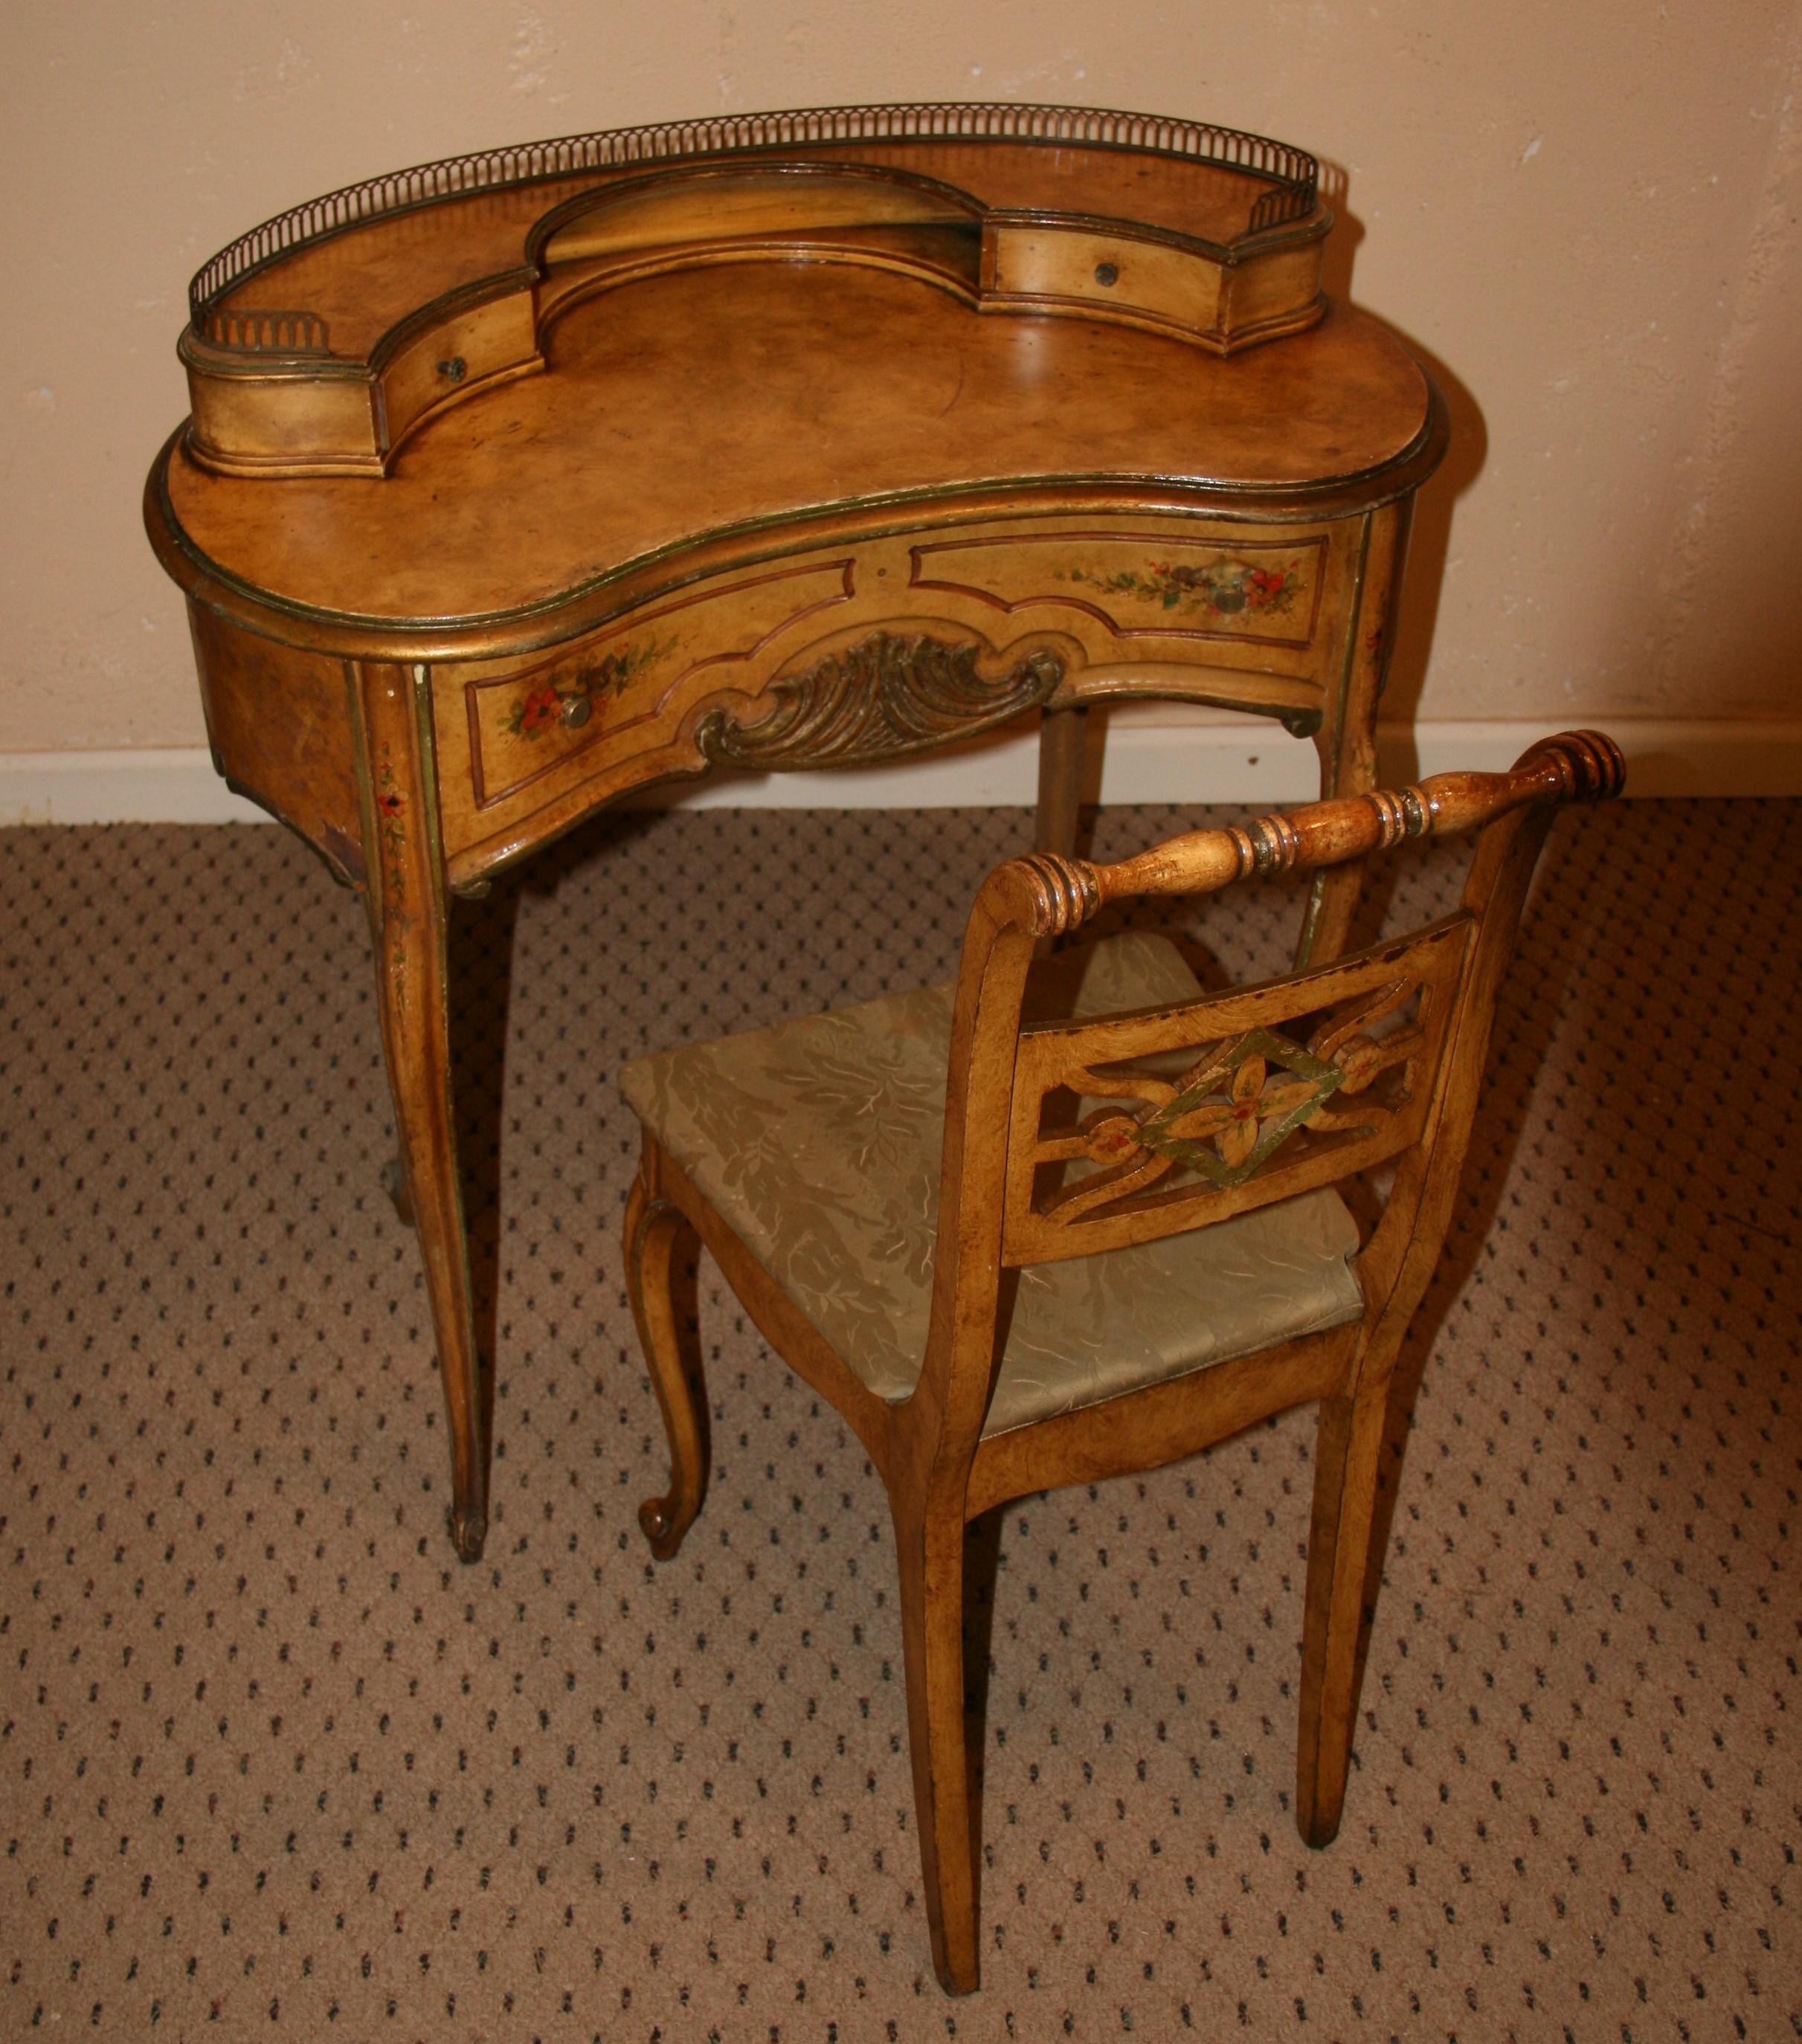 3-1072 Nierenförmiger Schreibtisch und passender Stuhl mit handgemalten und geschnitzten Details
Messingreling und zwei kleine Schubladen und große mittlere Schublade.
Stuhl 34